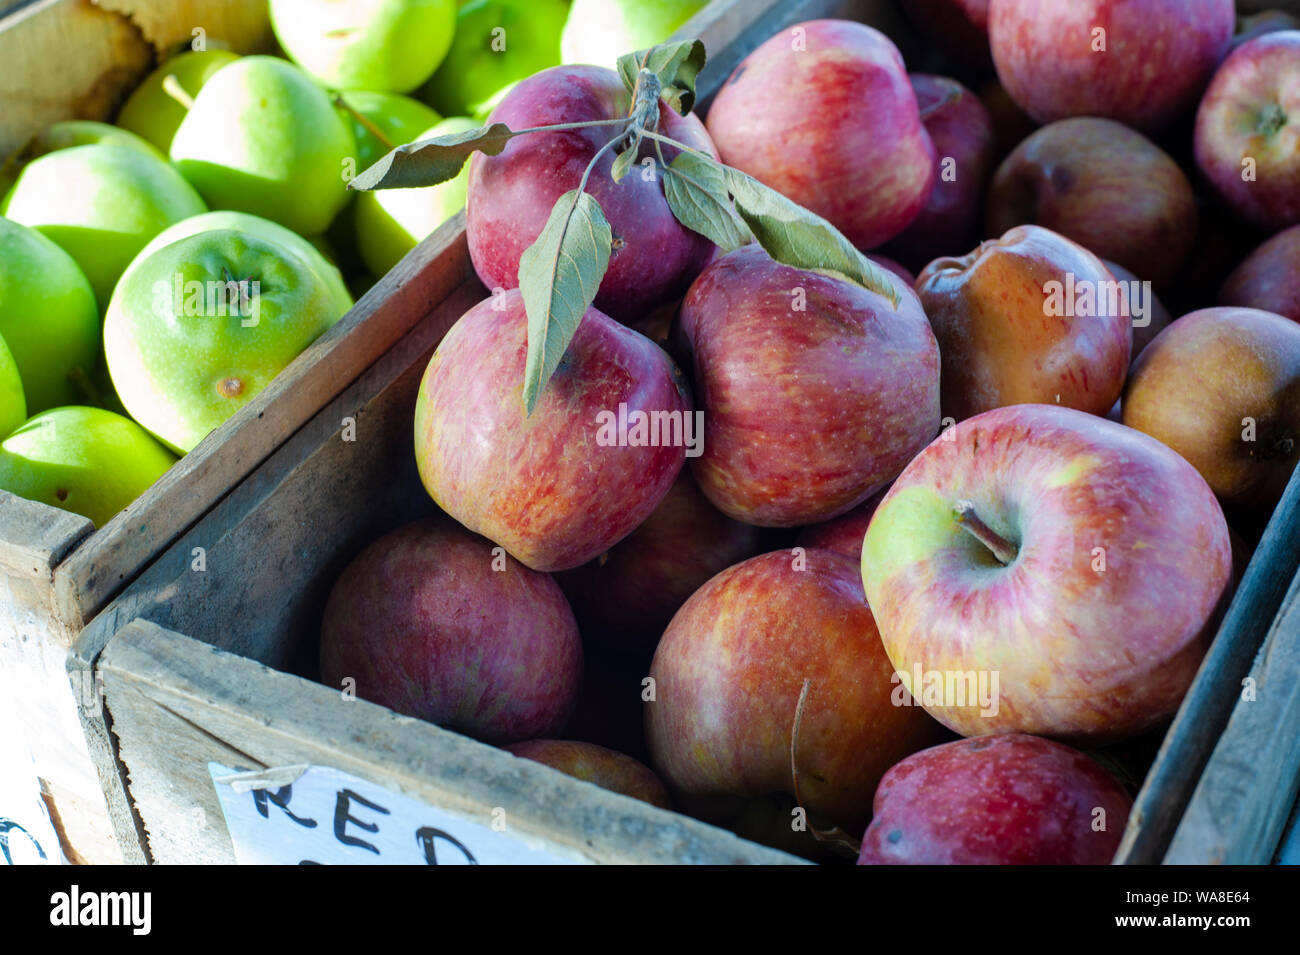 Les pommes biologiques à vendre à un marché de fermiers, Red Delicious et vert les pommes Granny Smith sont les deux variétés populaires en Australie Banque D'Images